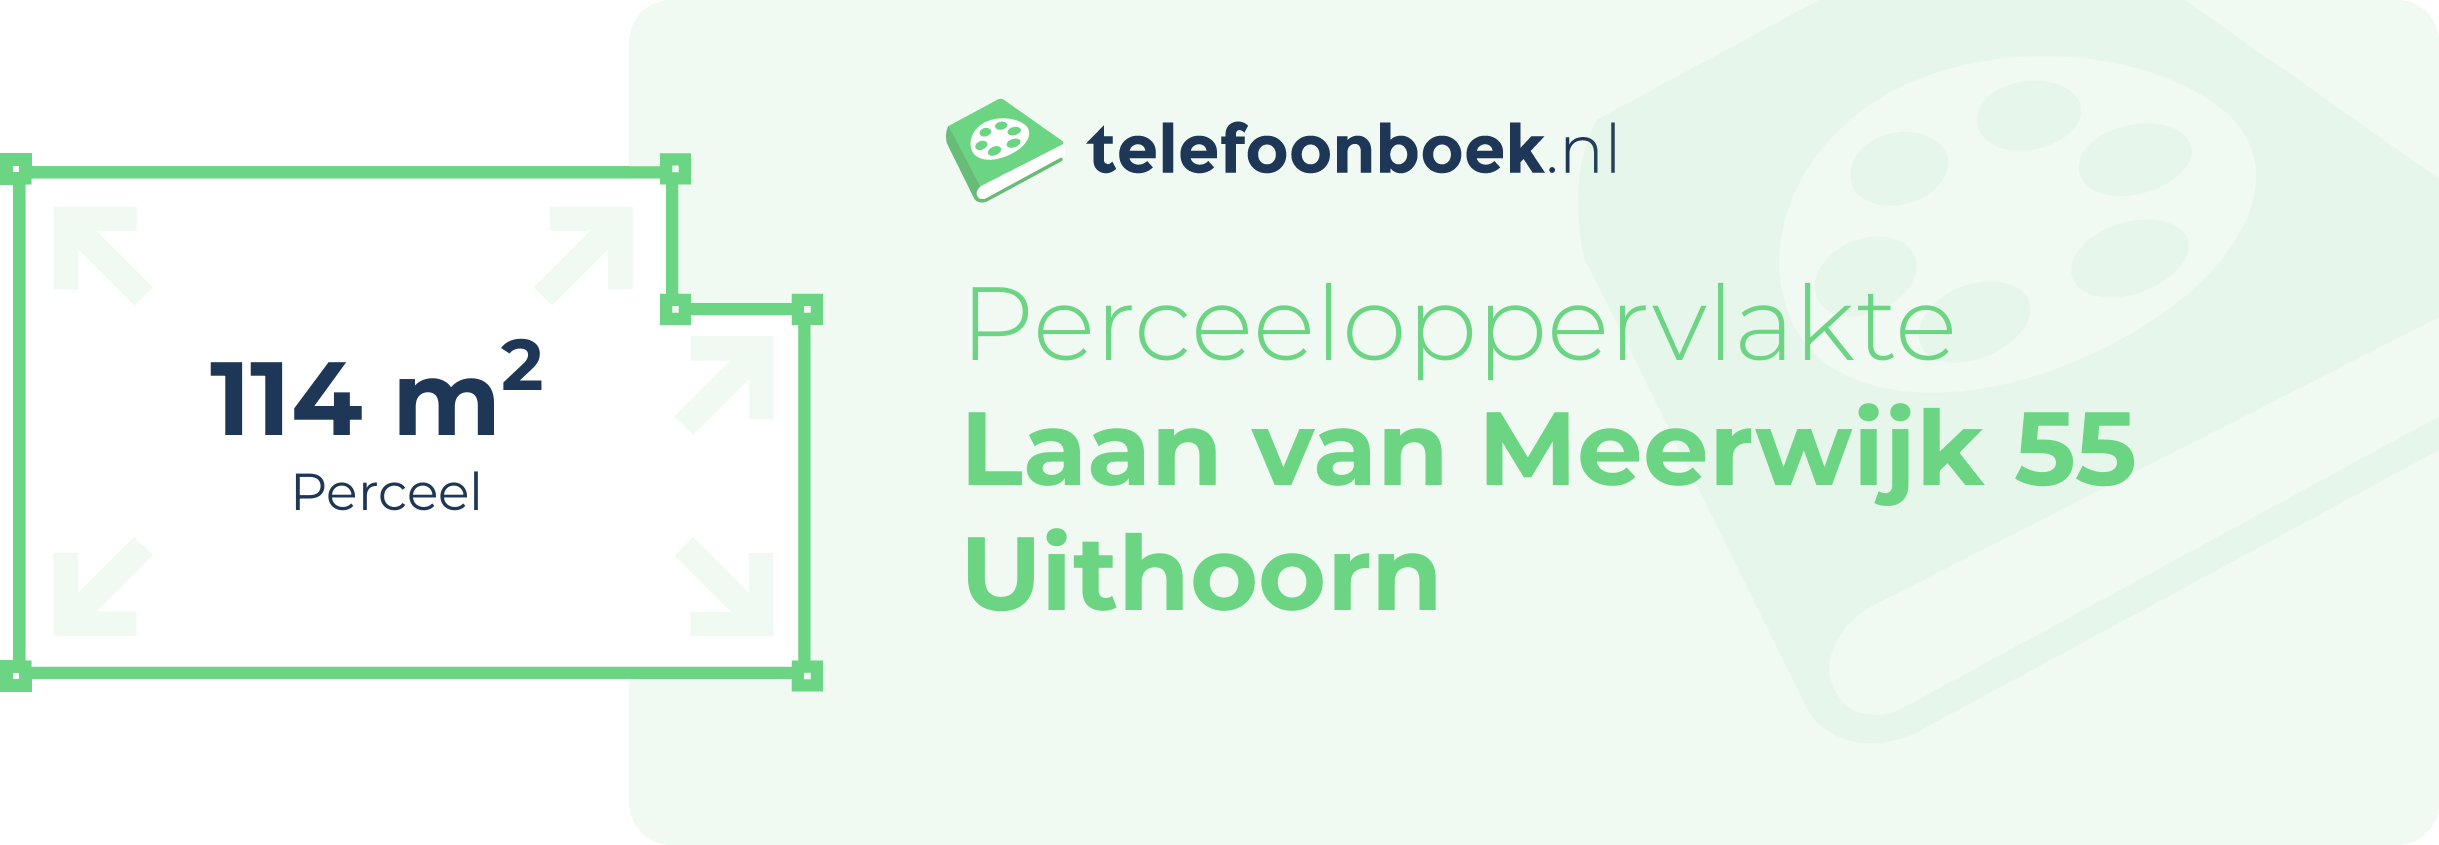 Perceeloppervlakte Laan Van Meerwijk 55 Uithoorn